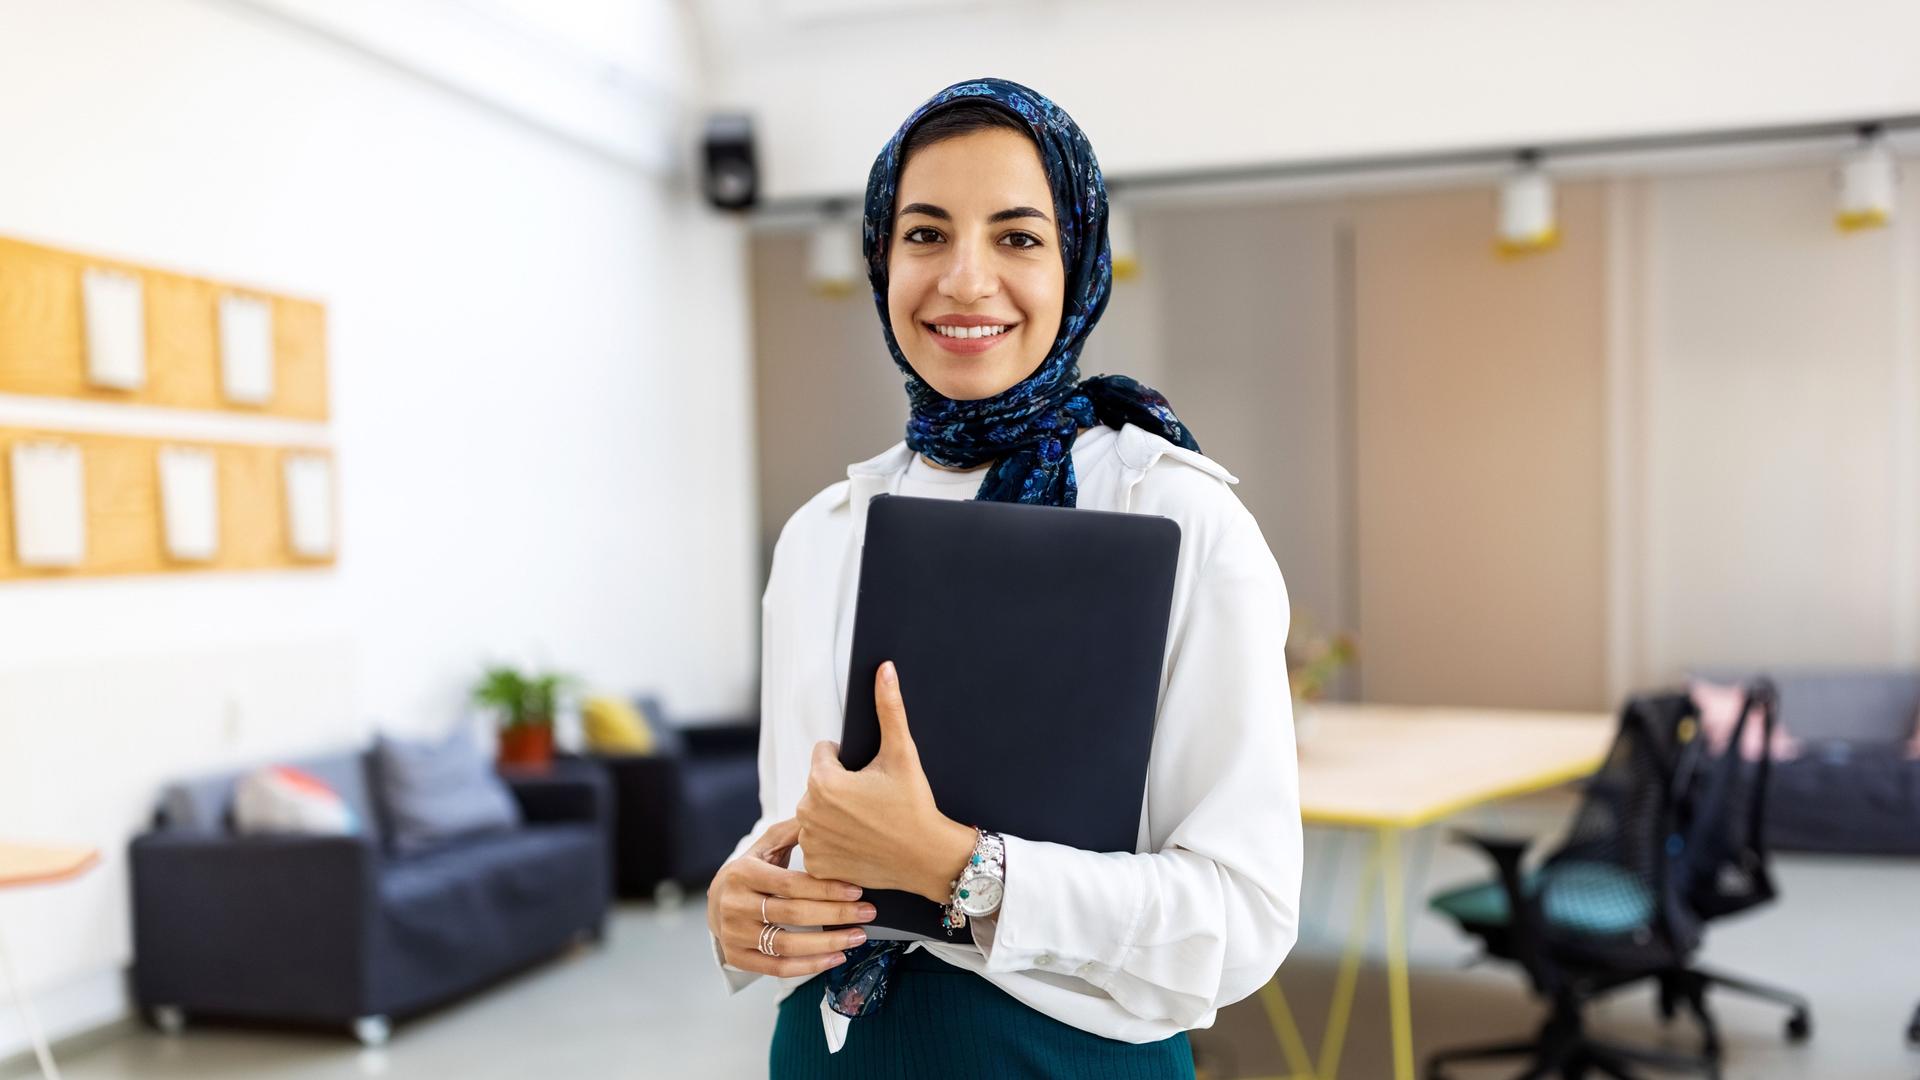 Eine junge Frau mit Hijab steht in einem großen Büro. Sie hält Unterlagen in einem Ordner in der Hand.